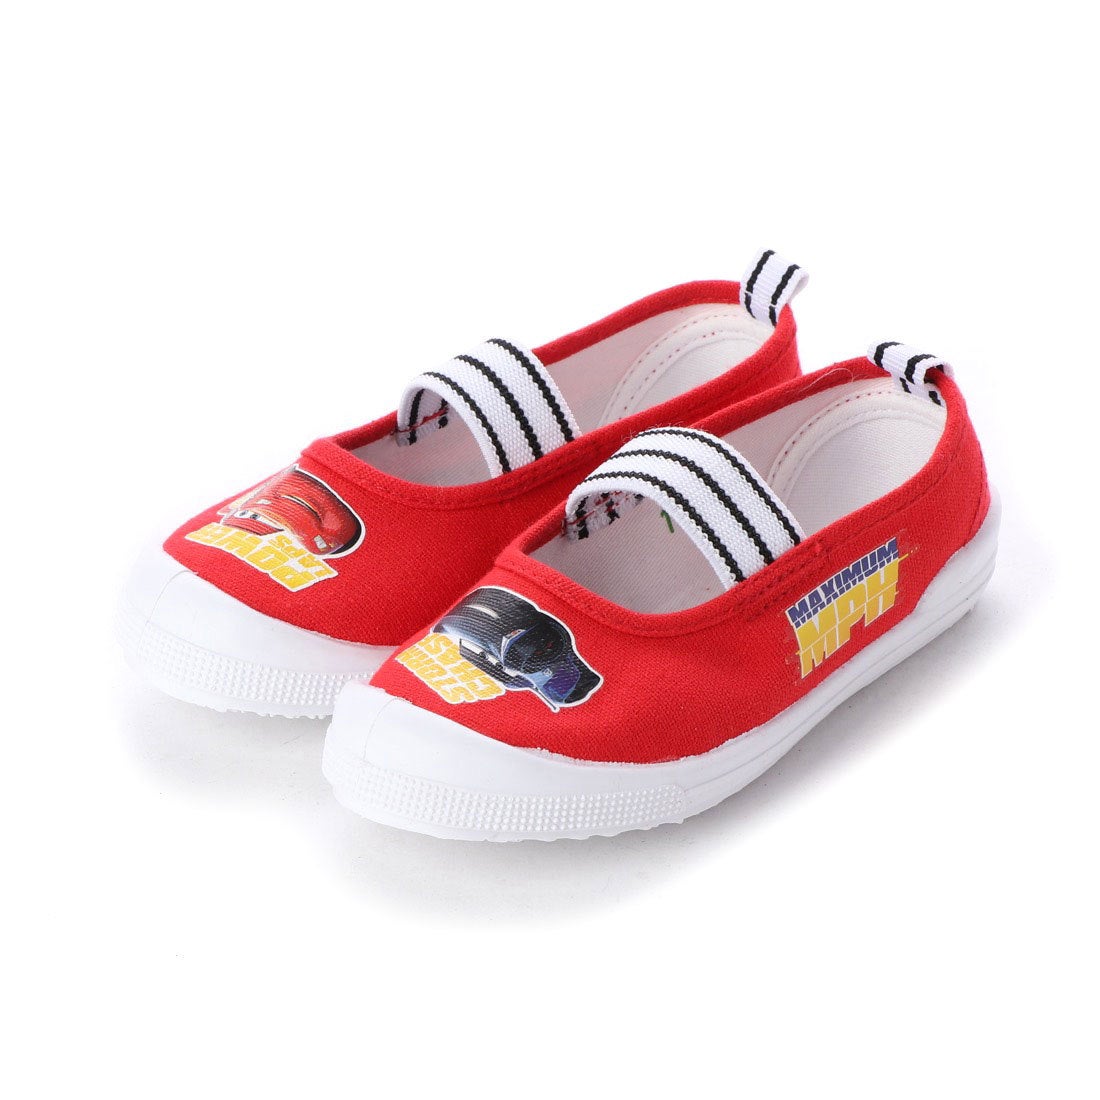 ディズニー Disney キャラクターバレーシューズ Red 靴 ファッション通販 ロコンド 自宅で試着 気軽に返品